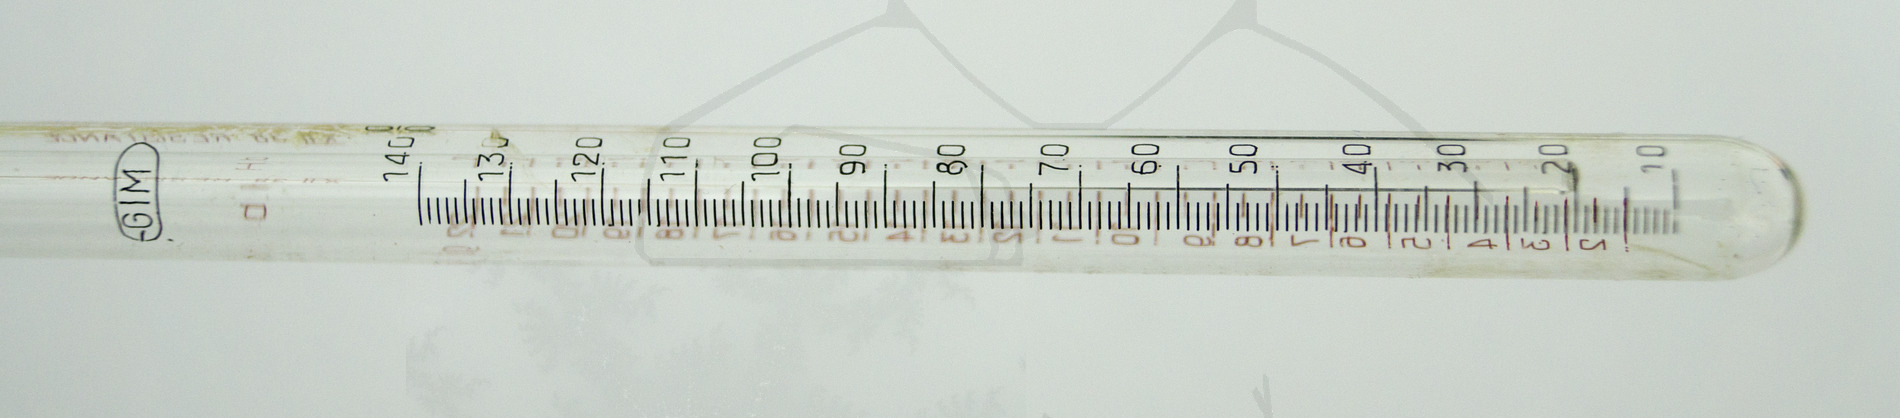 Farbstab-Haemometer, Detailaufnahme Meßröhrchen